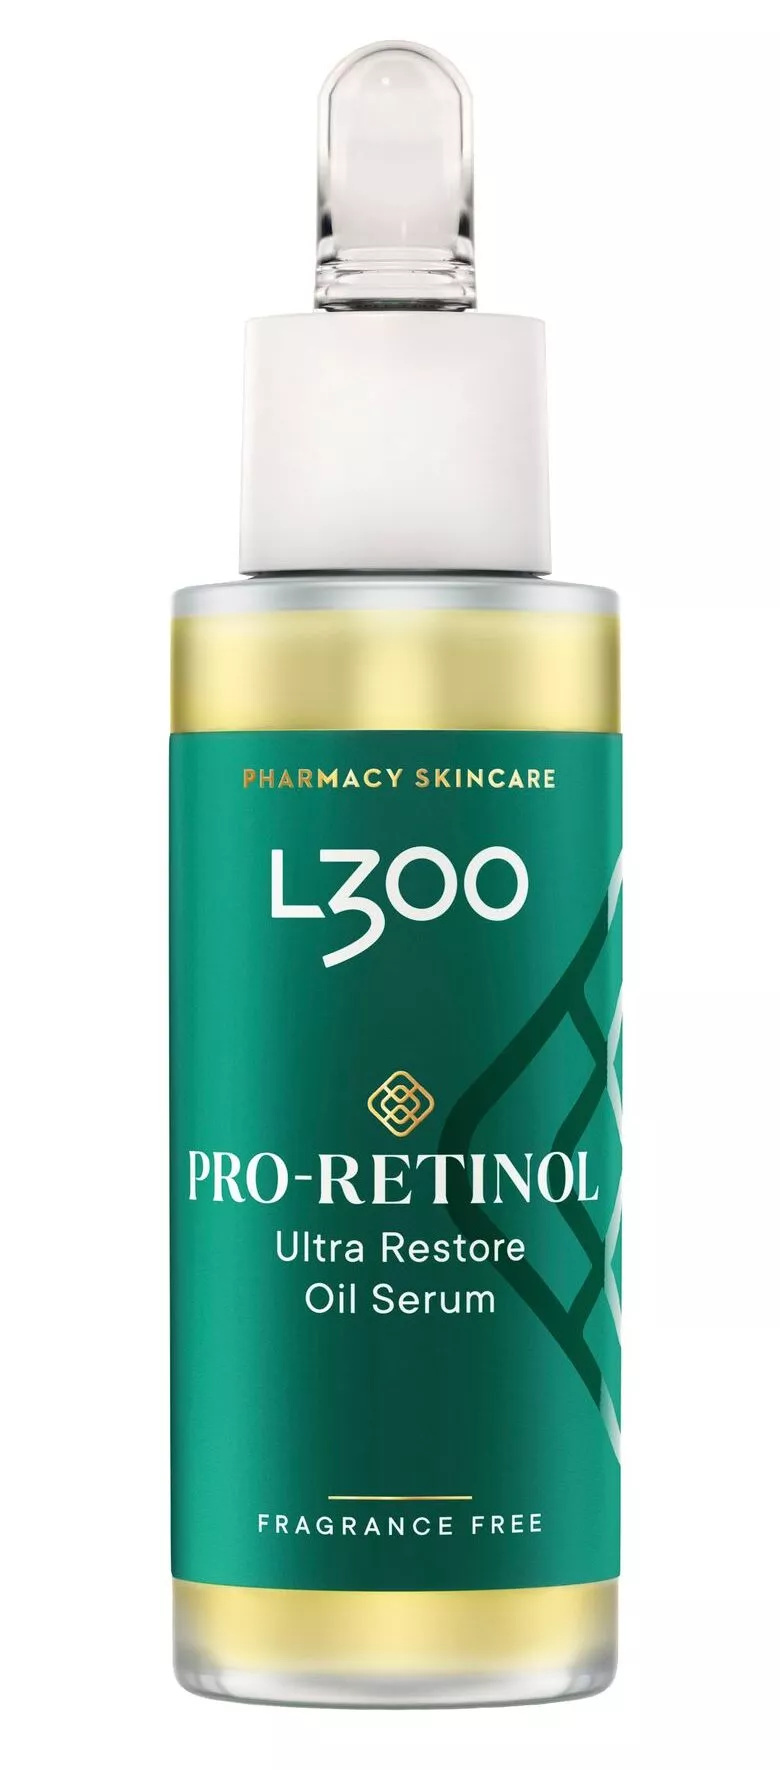 Paras edullinen yllättäjä: L300 Pro-Retinol -ihonhoitosarja